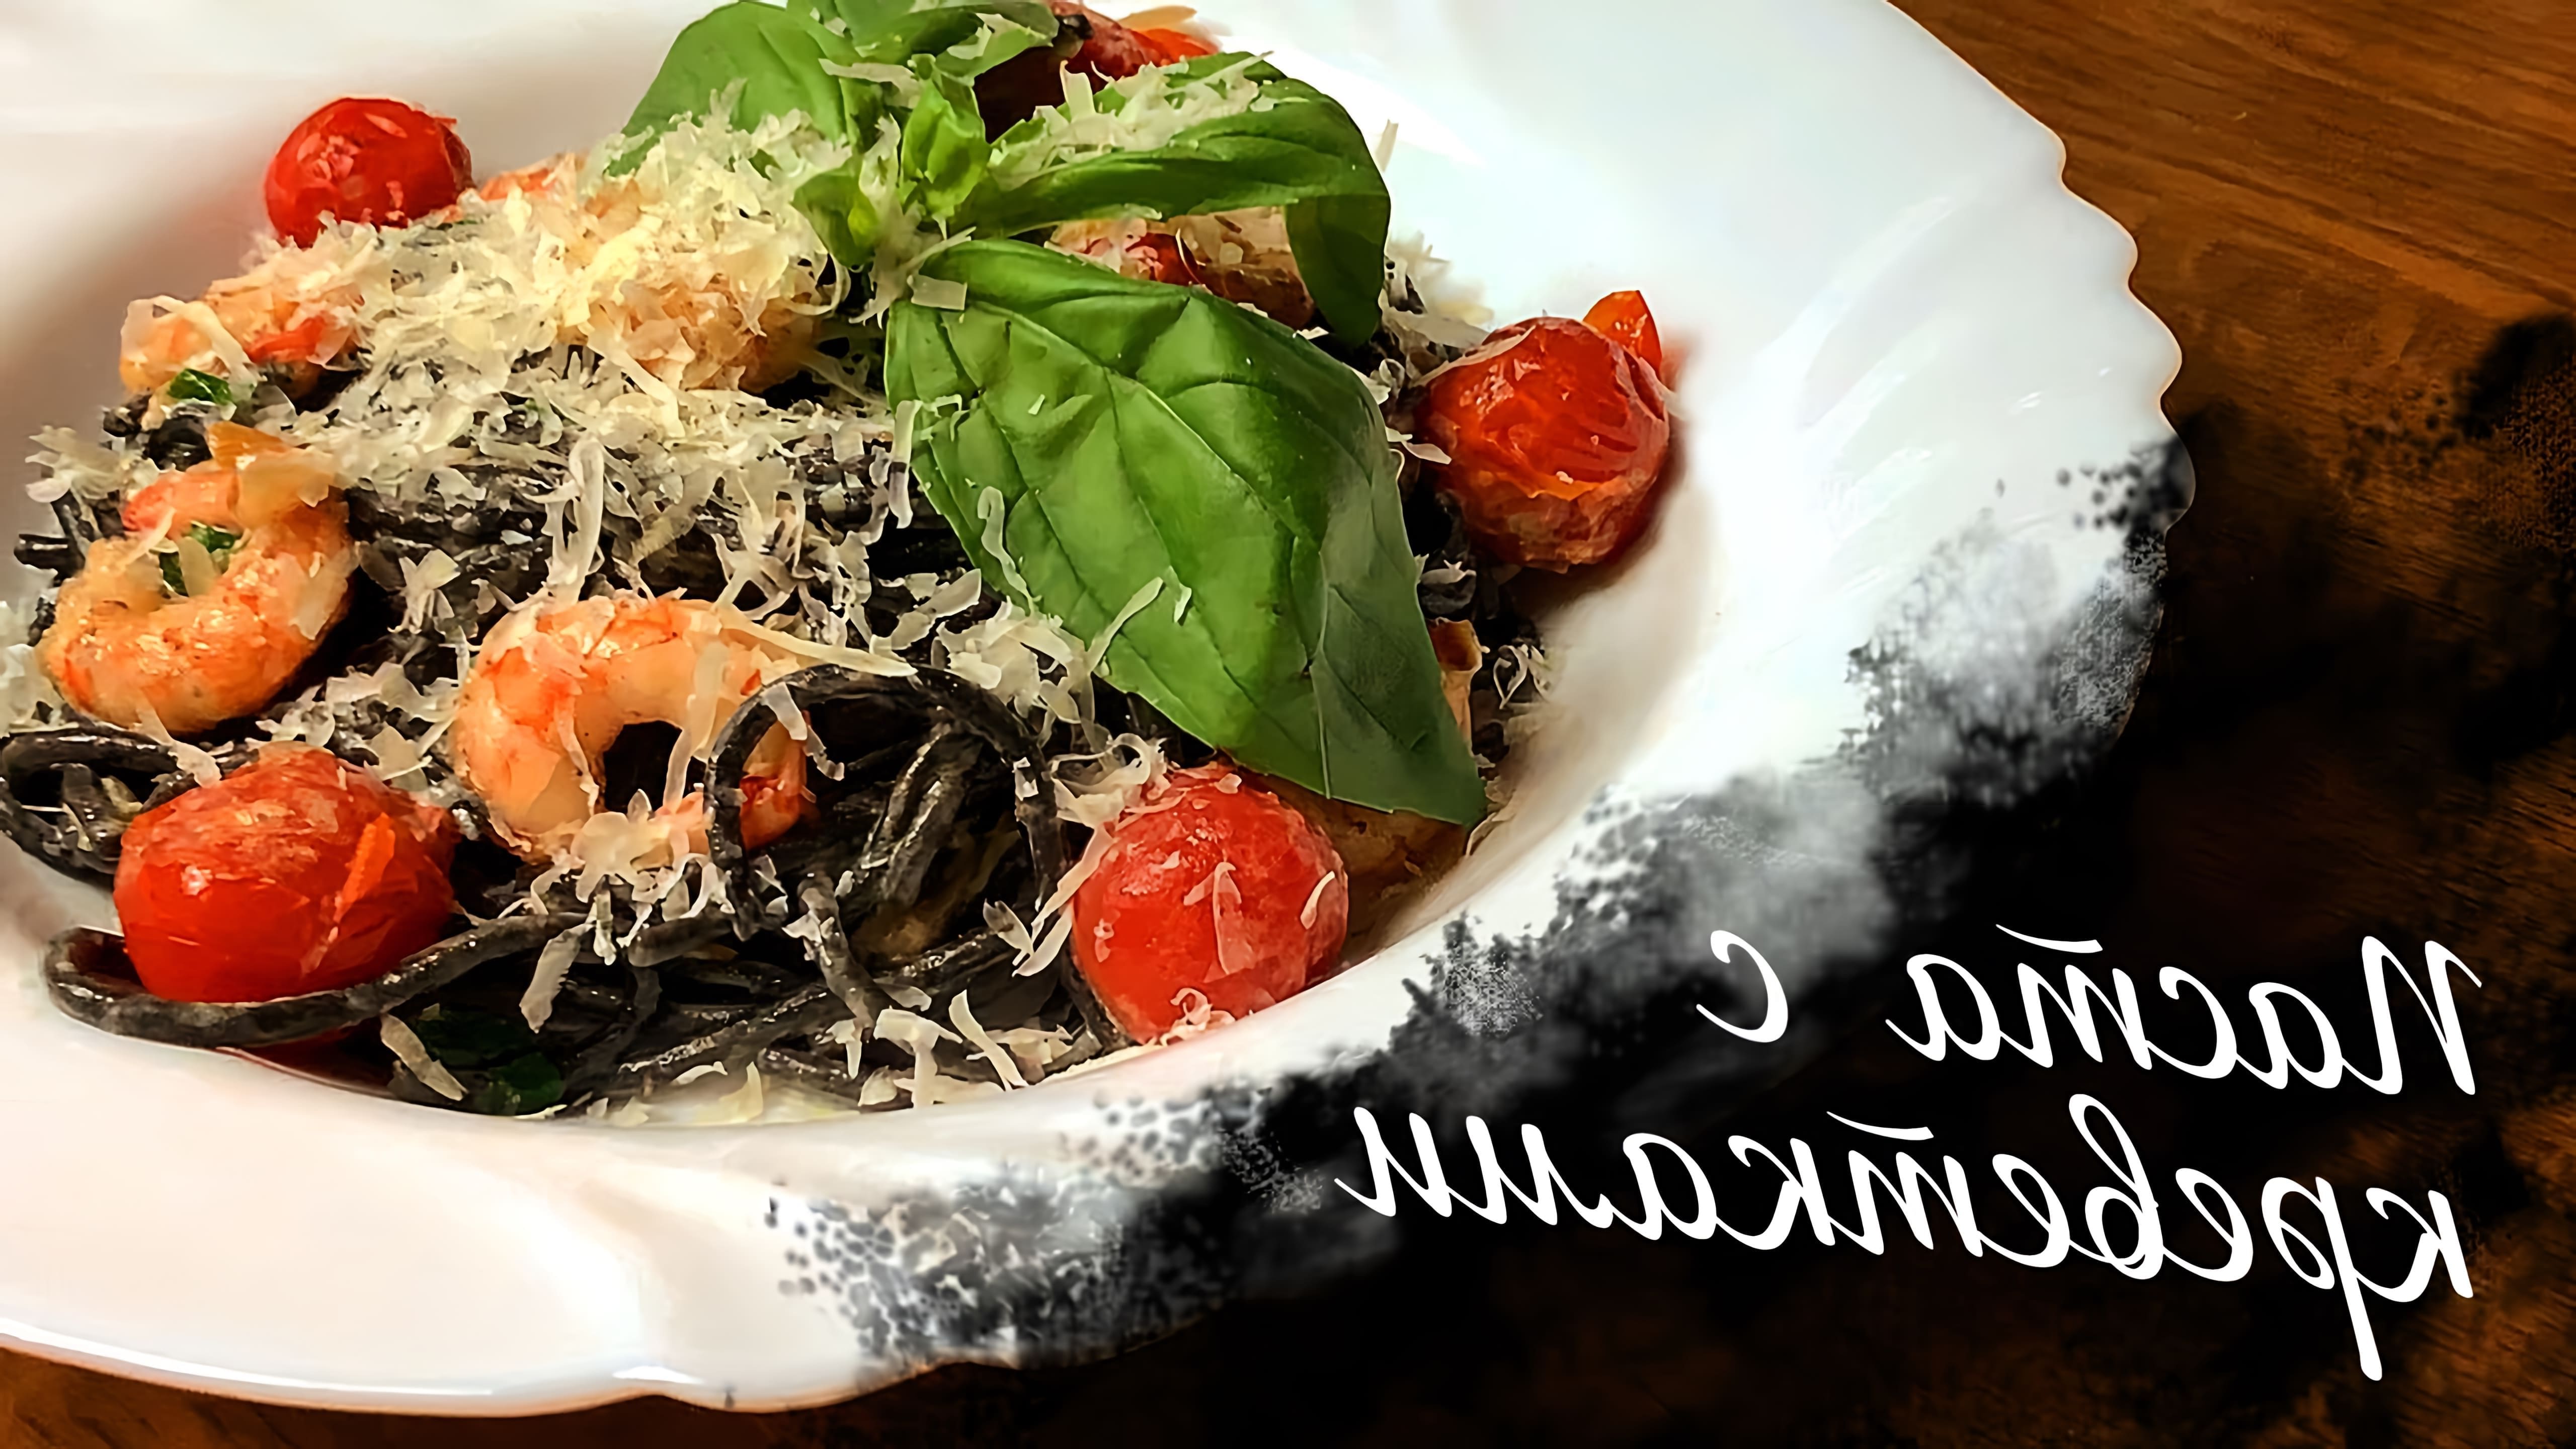 В этом видео демонстрируется рецепт приготовления пасты с чернилами каракатицы и креветками в сливочном соусе